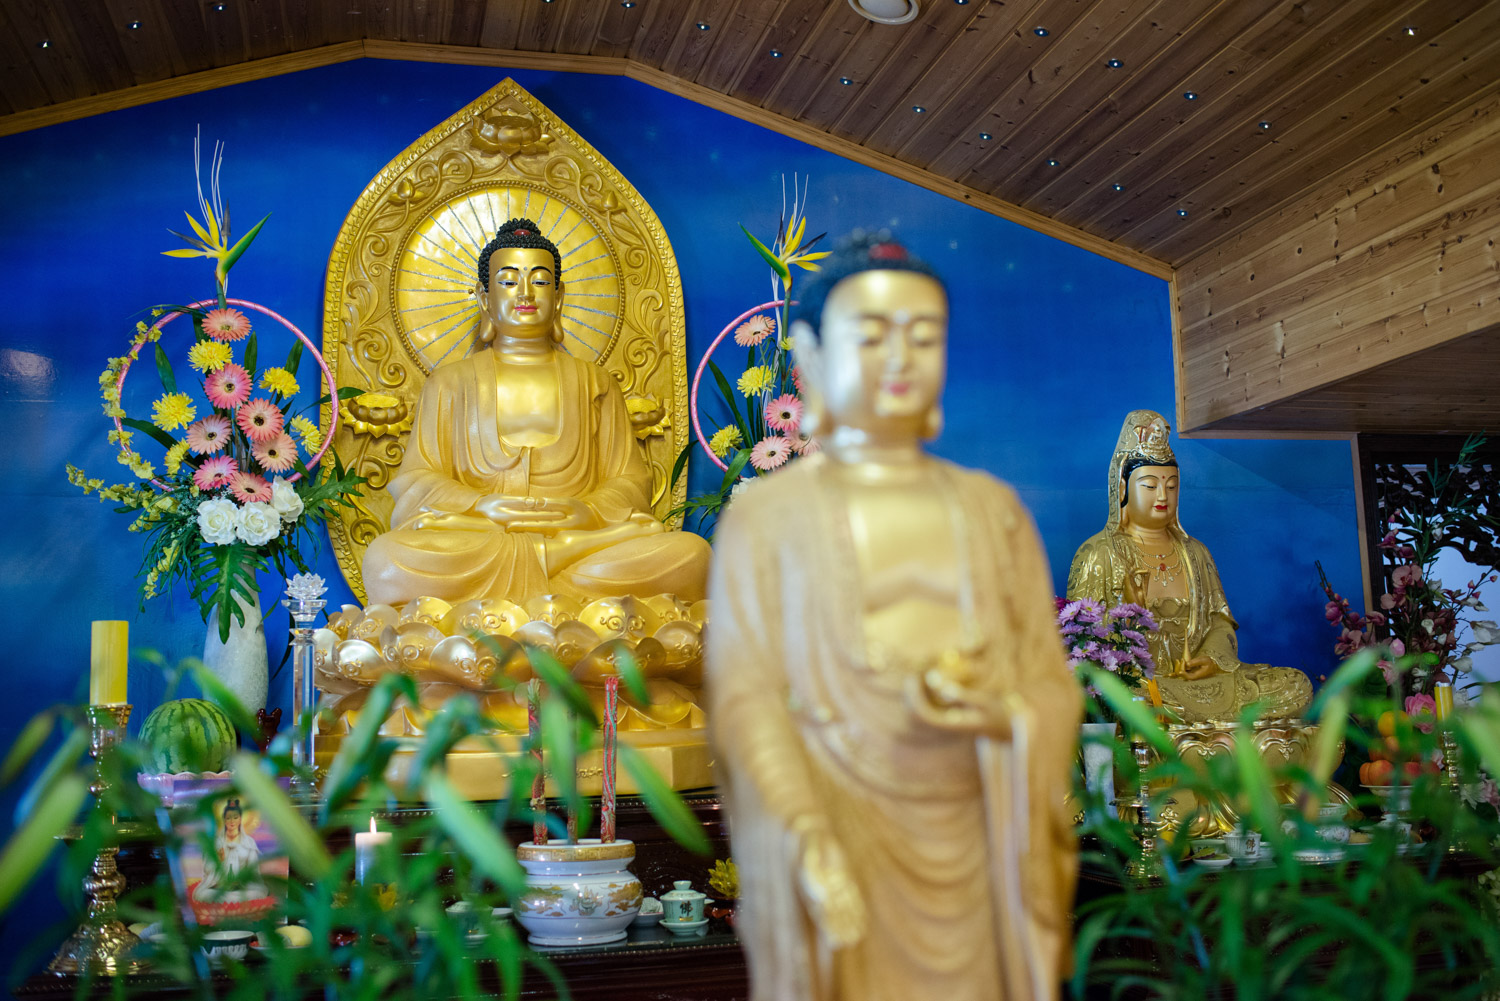 Moss 03.07.2016 Midt i et industriområde i Moss ligger et prangende buddhisttempel i ekte vietnamesisk stil. Tempelet heter Tam Bao Tu og er ledet av munken Thich Vien Tinh. FOTO: JOAKIM S. ENGER